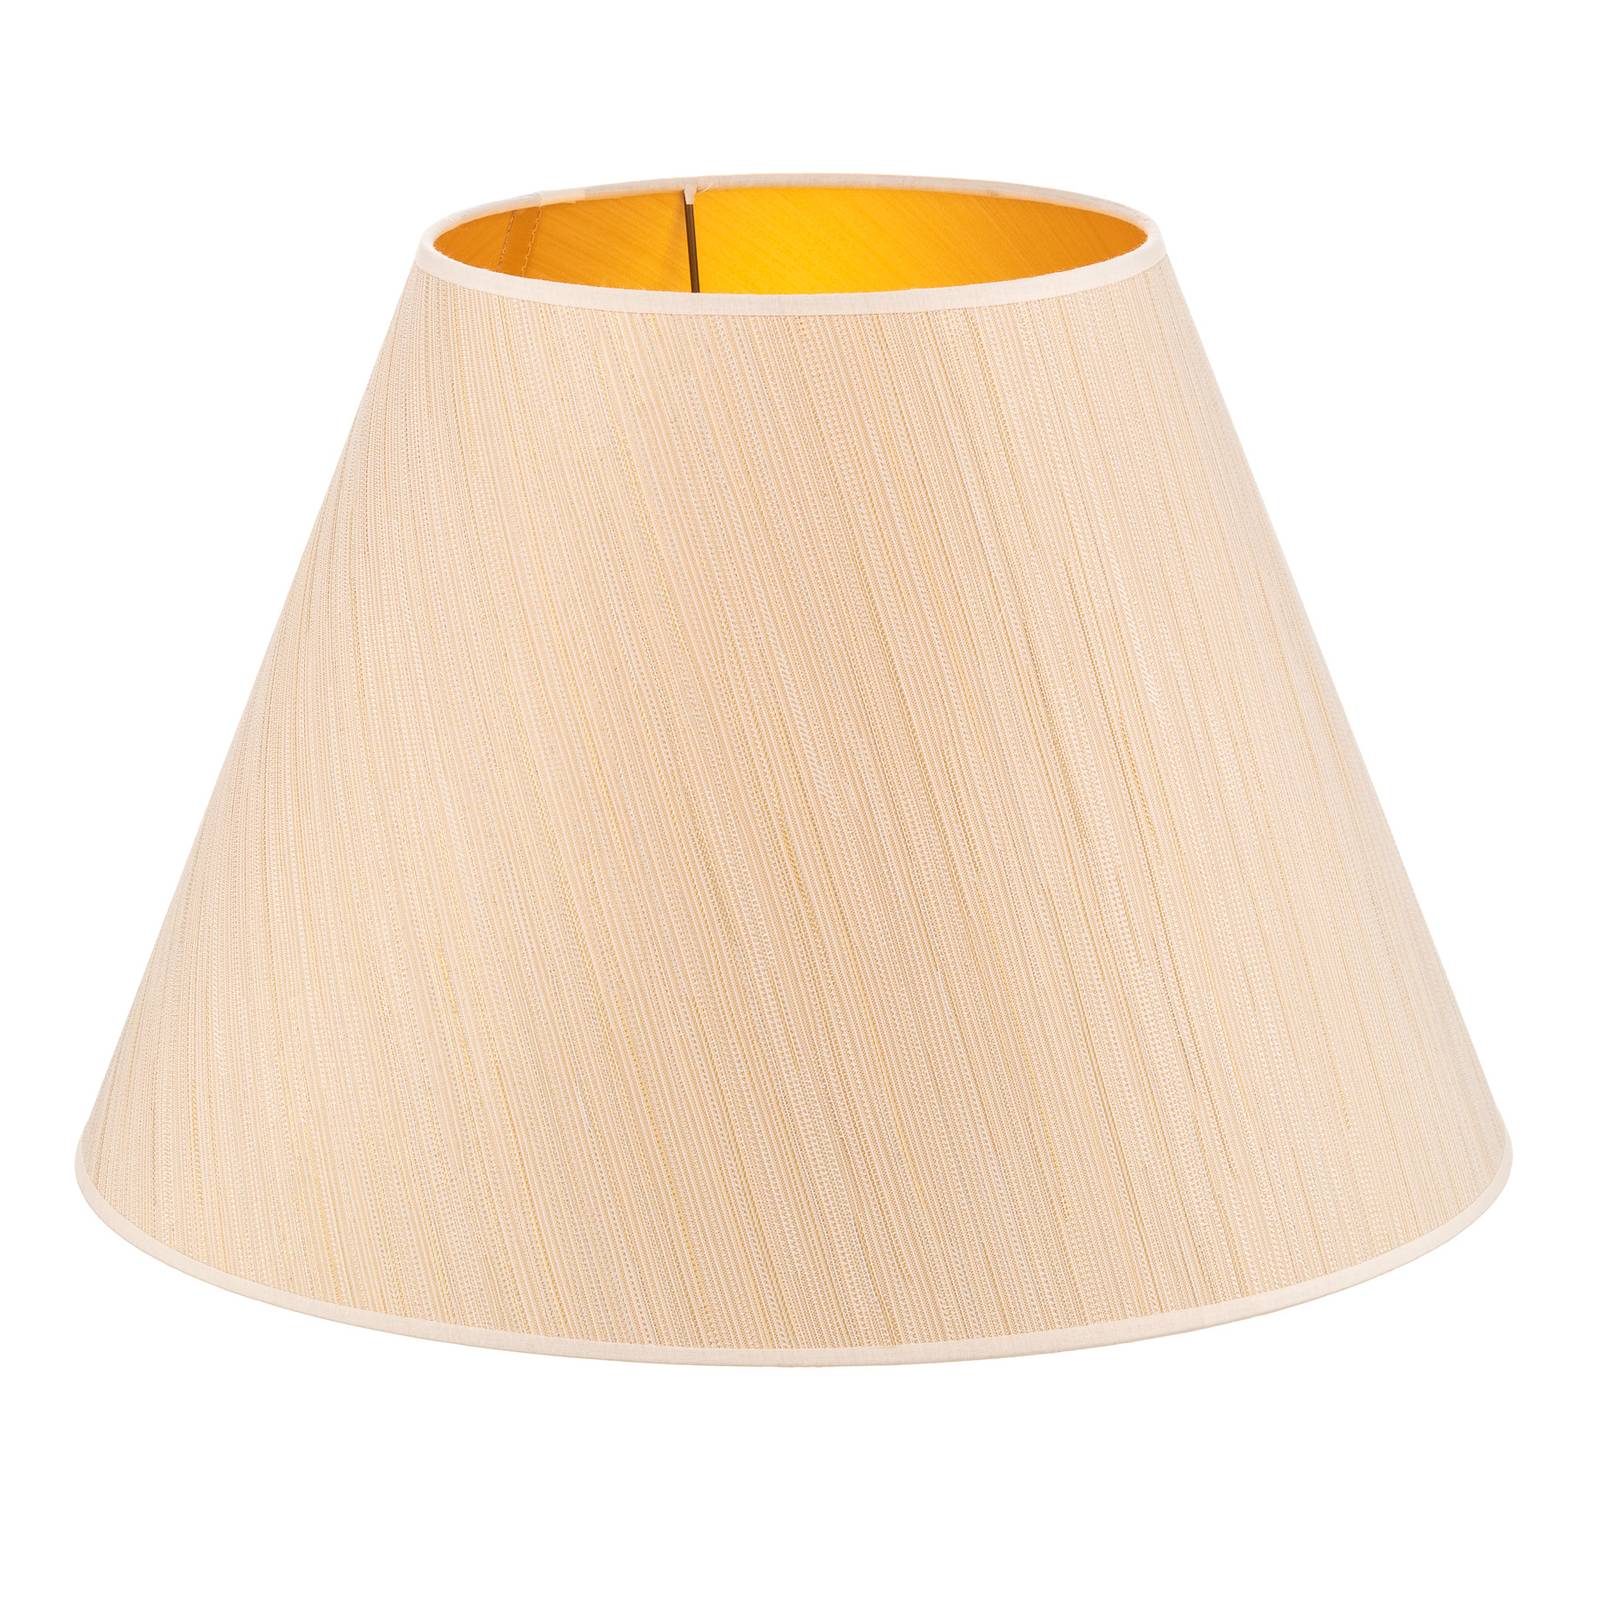 Sofia lámpaernyő 31 cm magas, fehér/arany csíkos